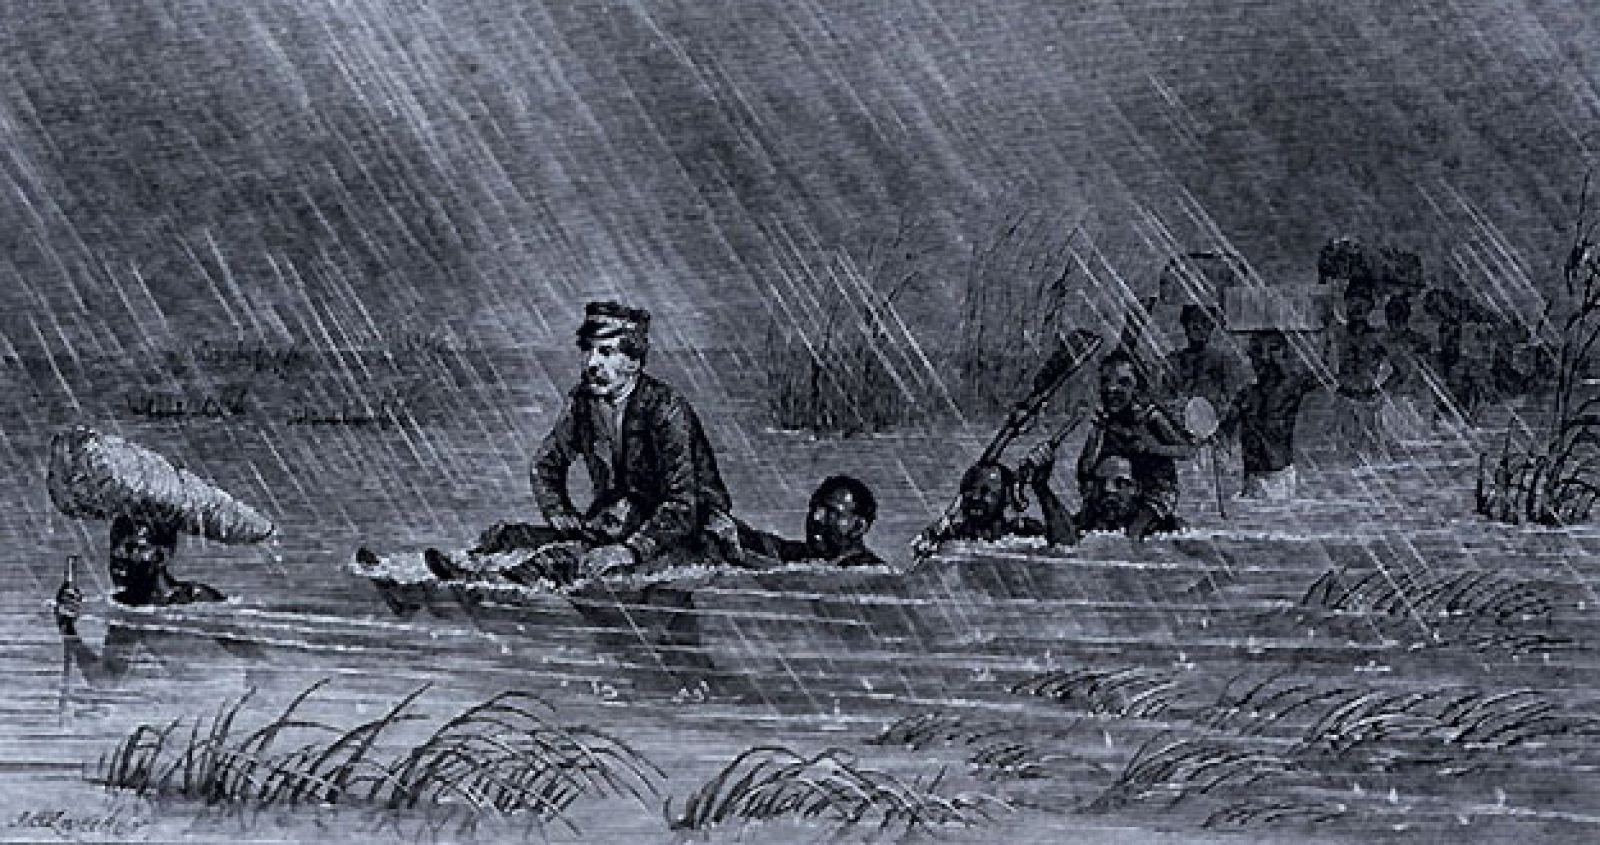 El explorador David Livingstone, con fiebre, es ayudado a cruzar un río